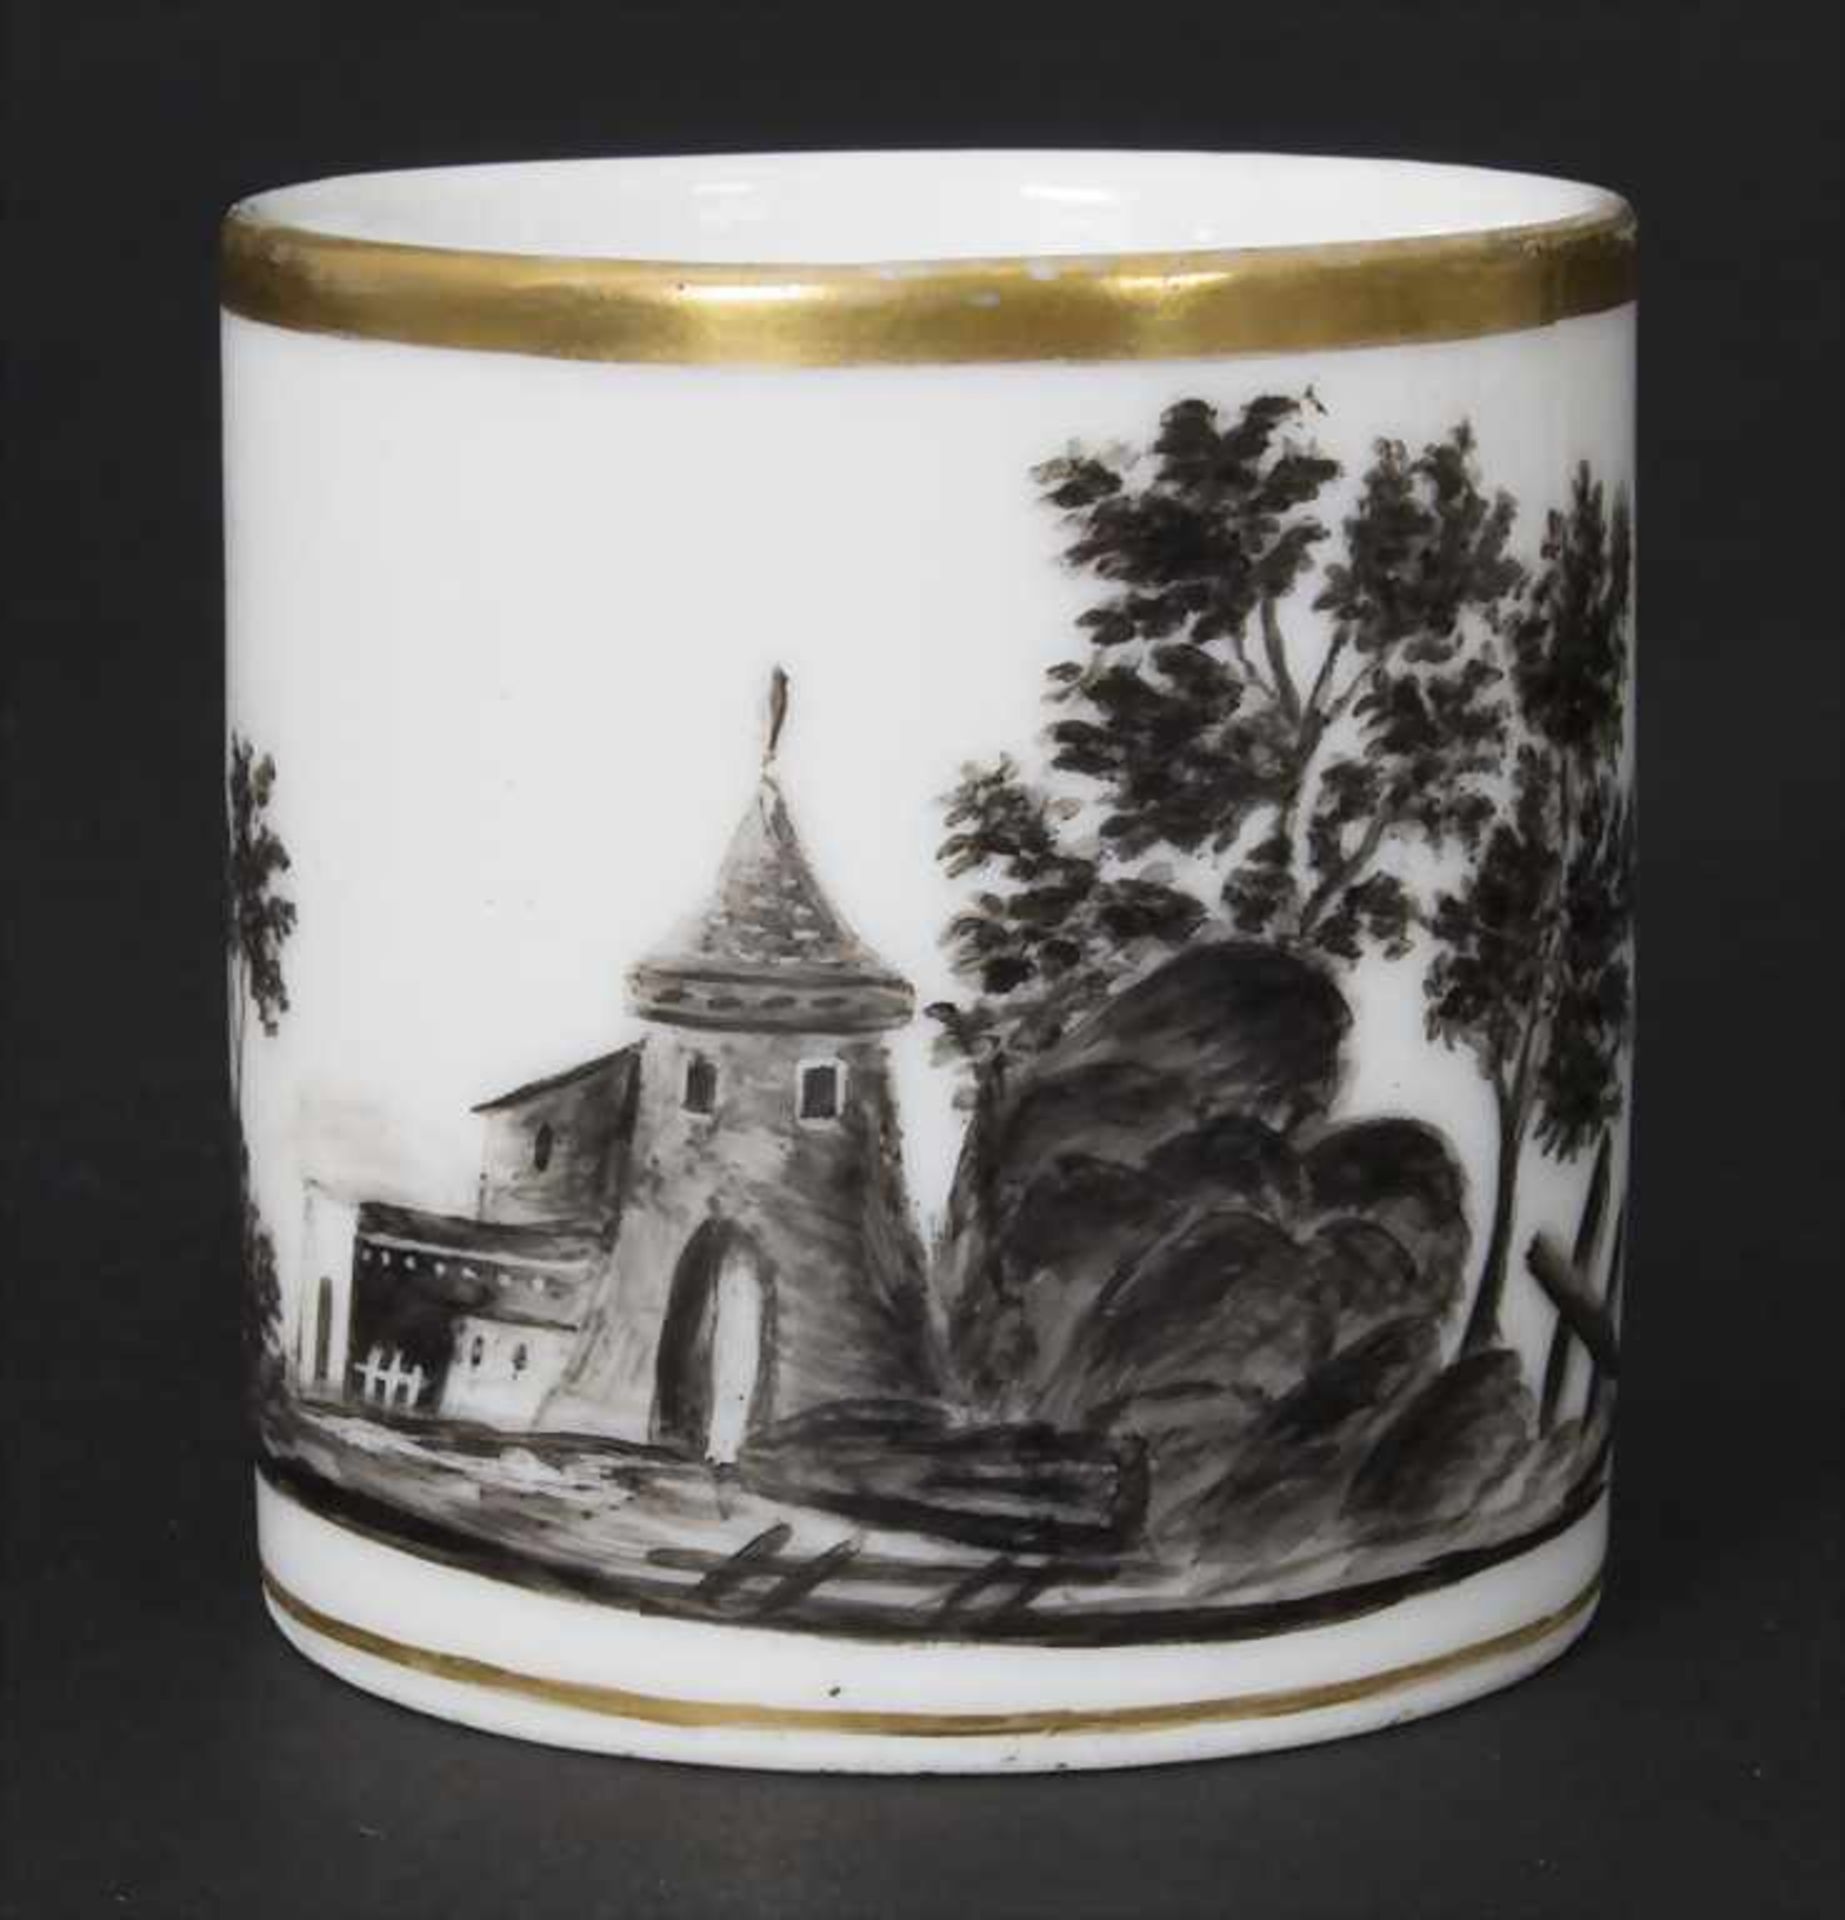 6 Empire Tassen und Untertassen mit Landschaften / 6 Empire cups and saucers with landscapes, Pa - Bild 5 aus 5